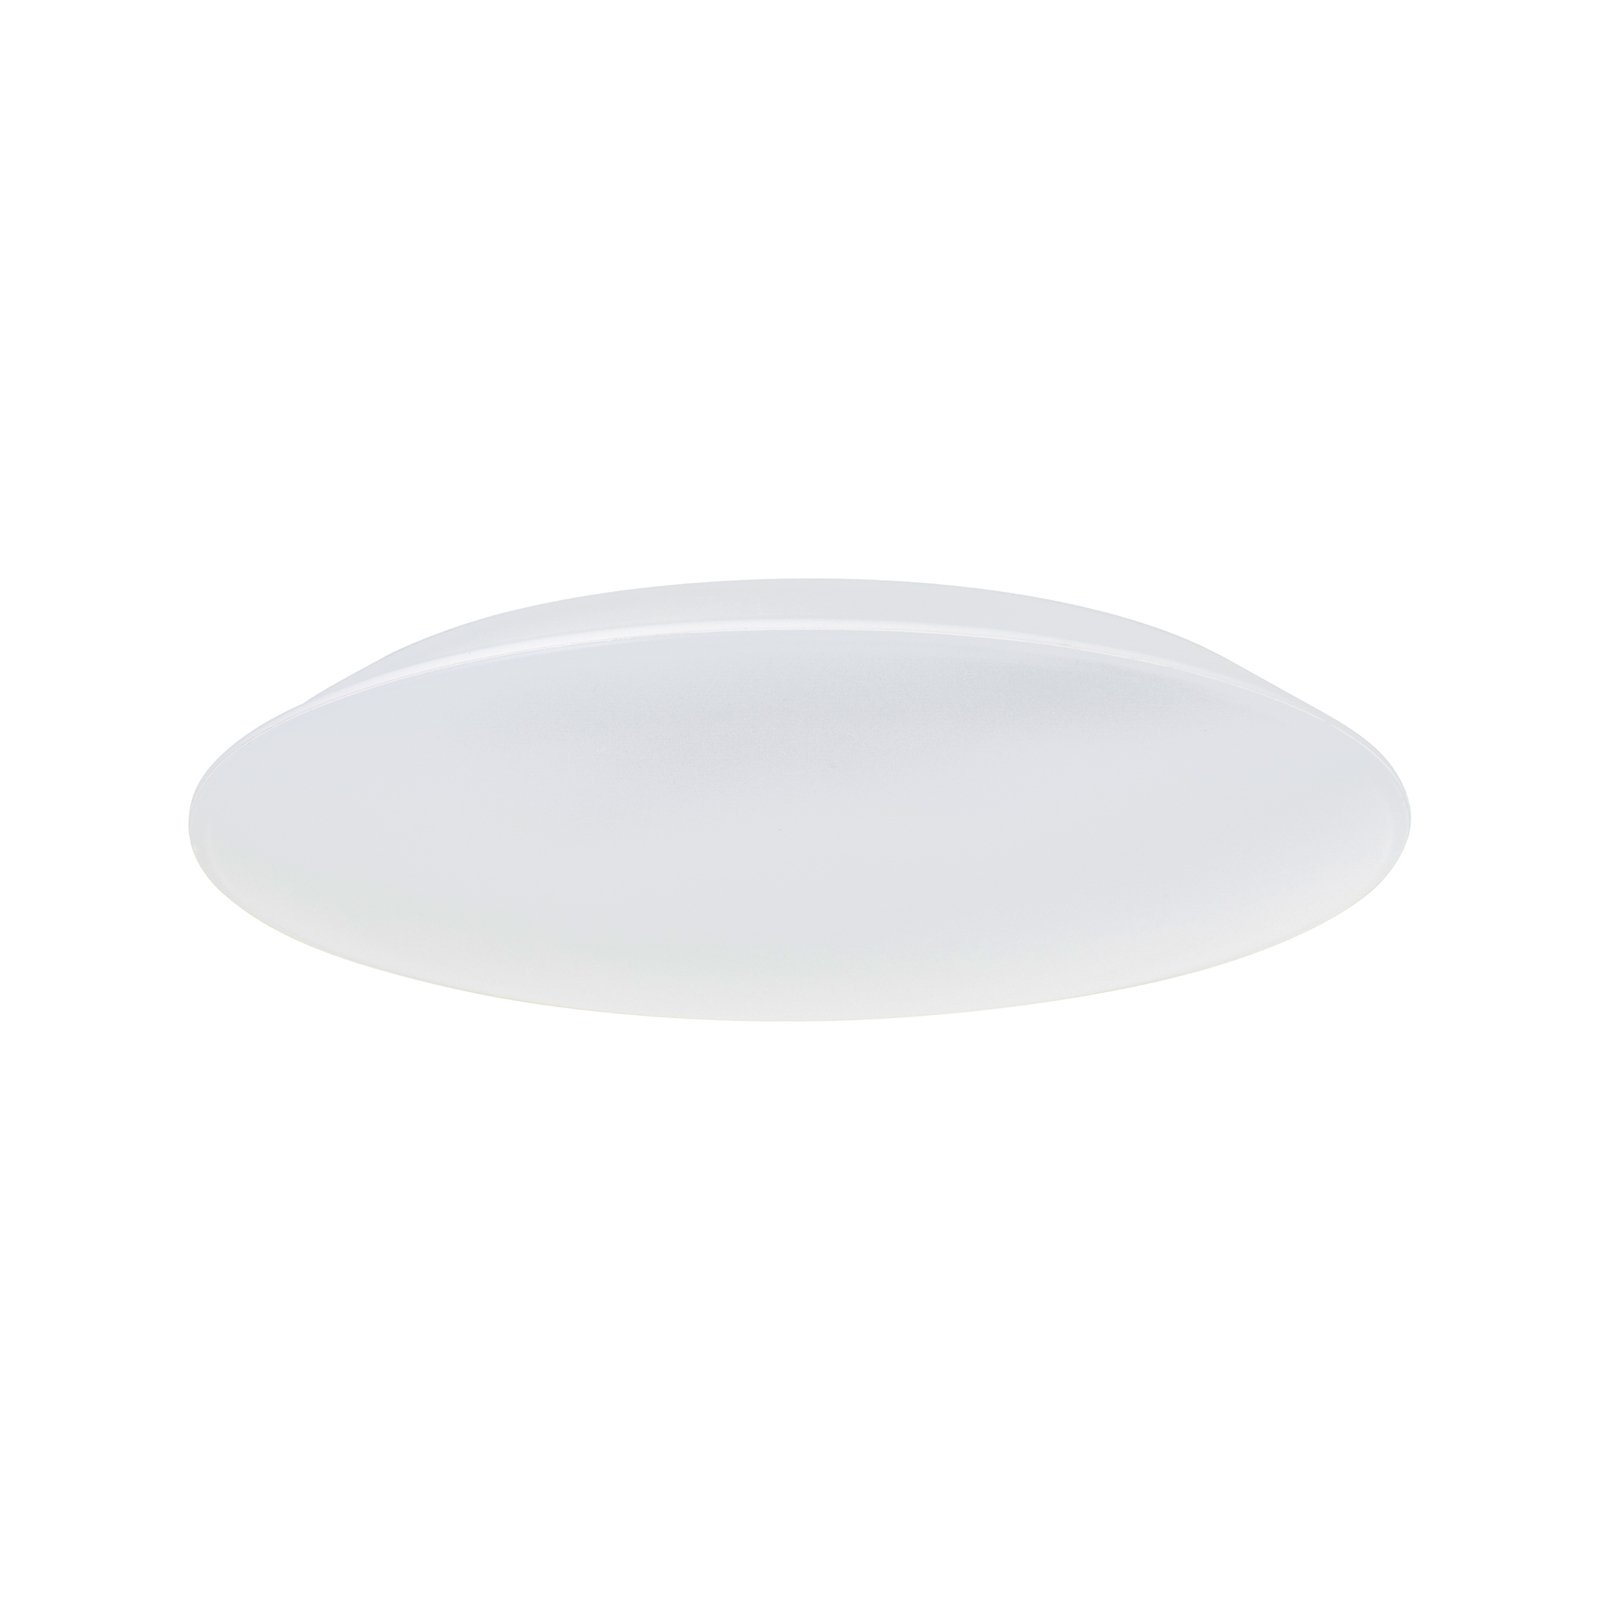 LED badkamer-plafondlamp Colden wit on/off Ø 29 cm